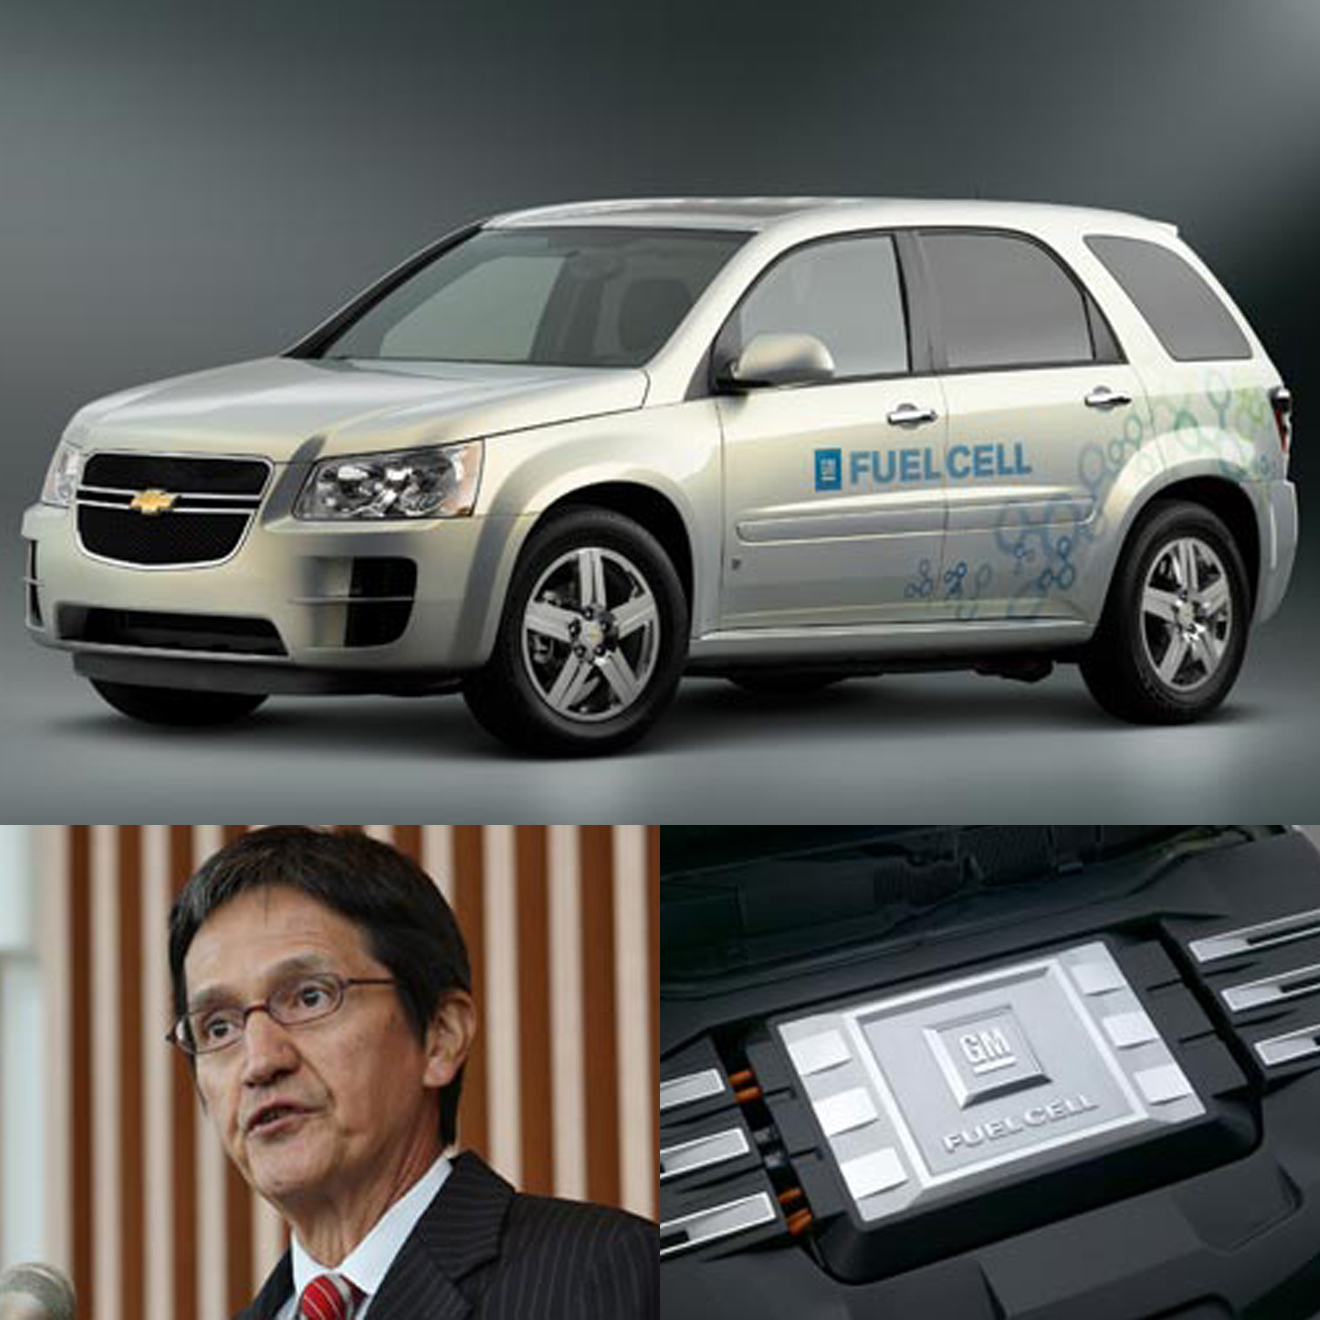 （上）燃料電池車「シボレー・エクイノックス」外観。（左）戦略ビジョンを語るゼネラルモーターズ・アジア・パシフィック・ジャパン代表取締役リック･ブラウン氏。（右）GM第4世代燃料電池システム。